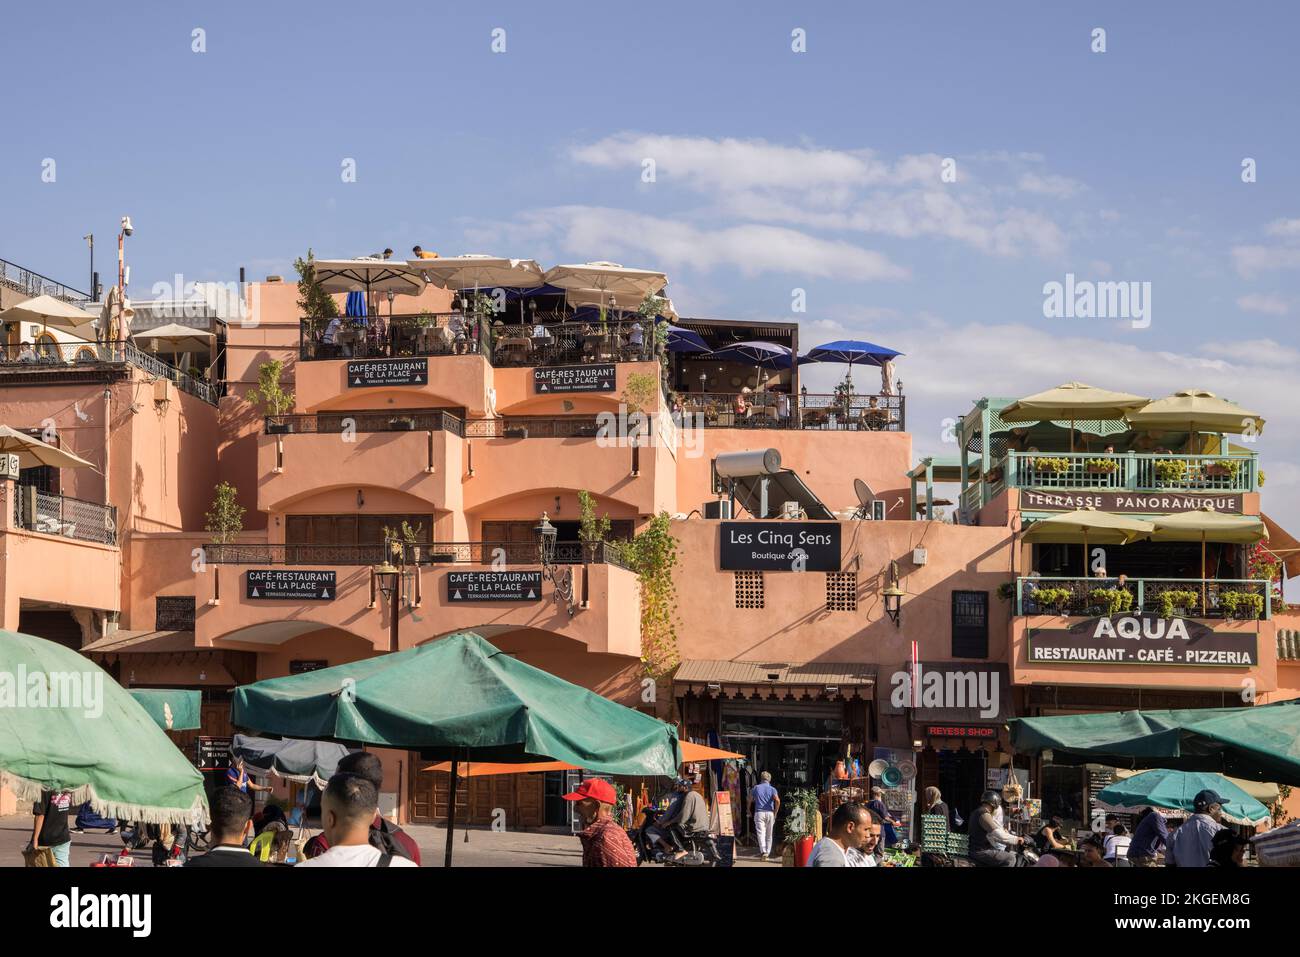 la piazza jamma el fna è la piazza principale di marrakech marocco, circondata da negozi, bancarelle, bar e ristoranti Foto Stock